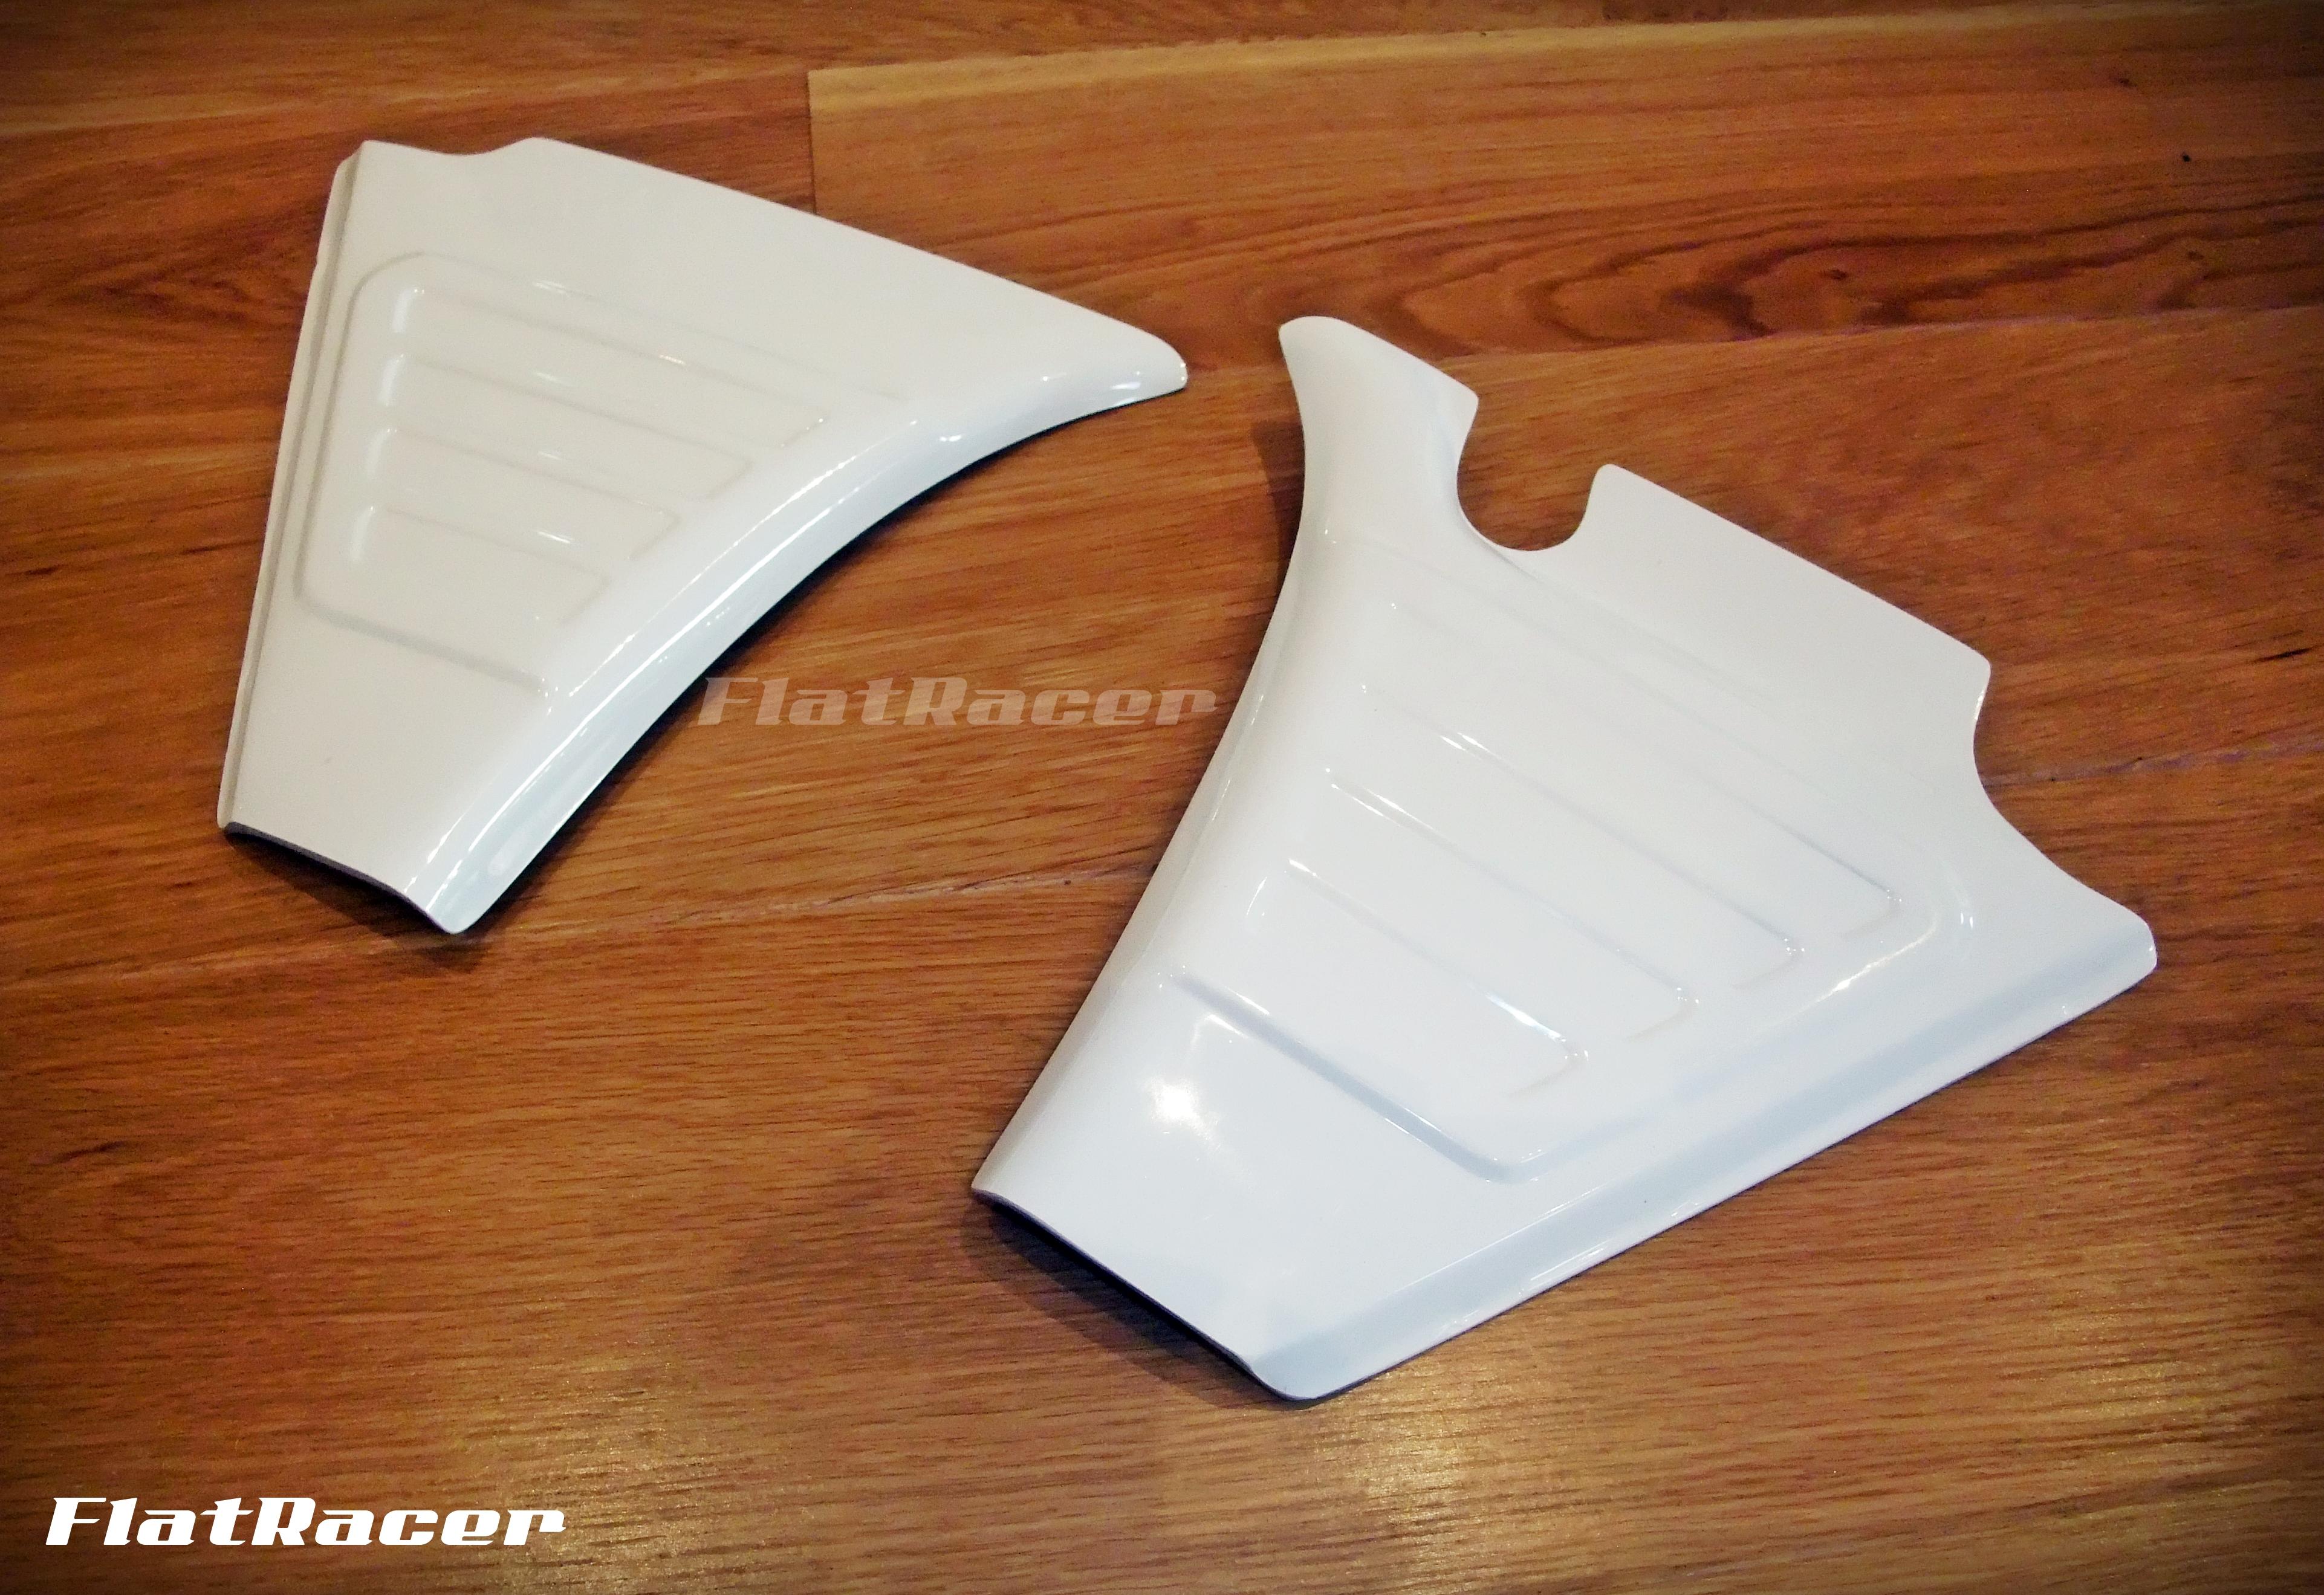 FlatRacer BMW /5 replica fibreglass battery covers / side panels (pair)